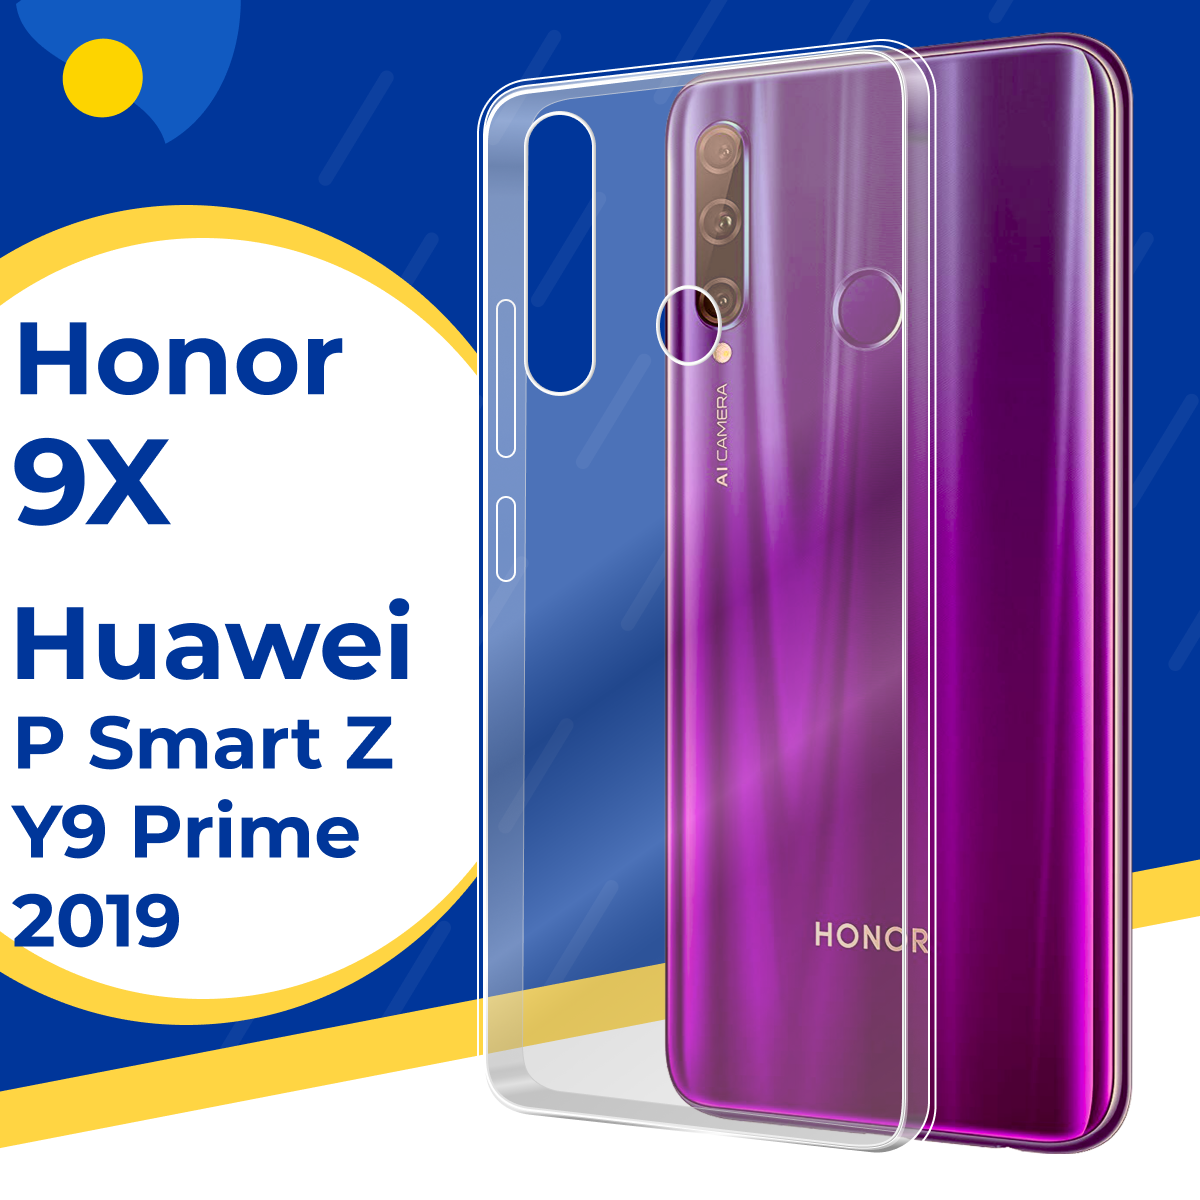 Силиконовый защитный чехол для телефона Honor 9X, Huawei P Smart Z, Y9 Prime 2019 / Тонкий чехол на Хонор 9Х, Хуавей П Смарт З, У9 Прайм / Прозрачный